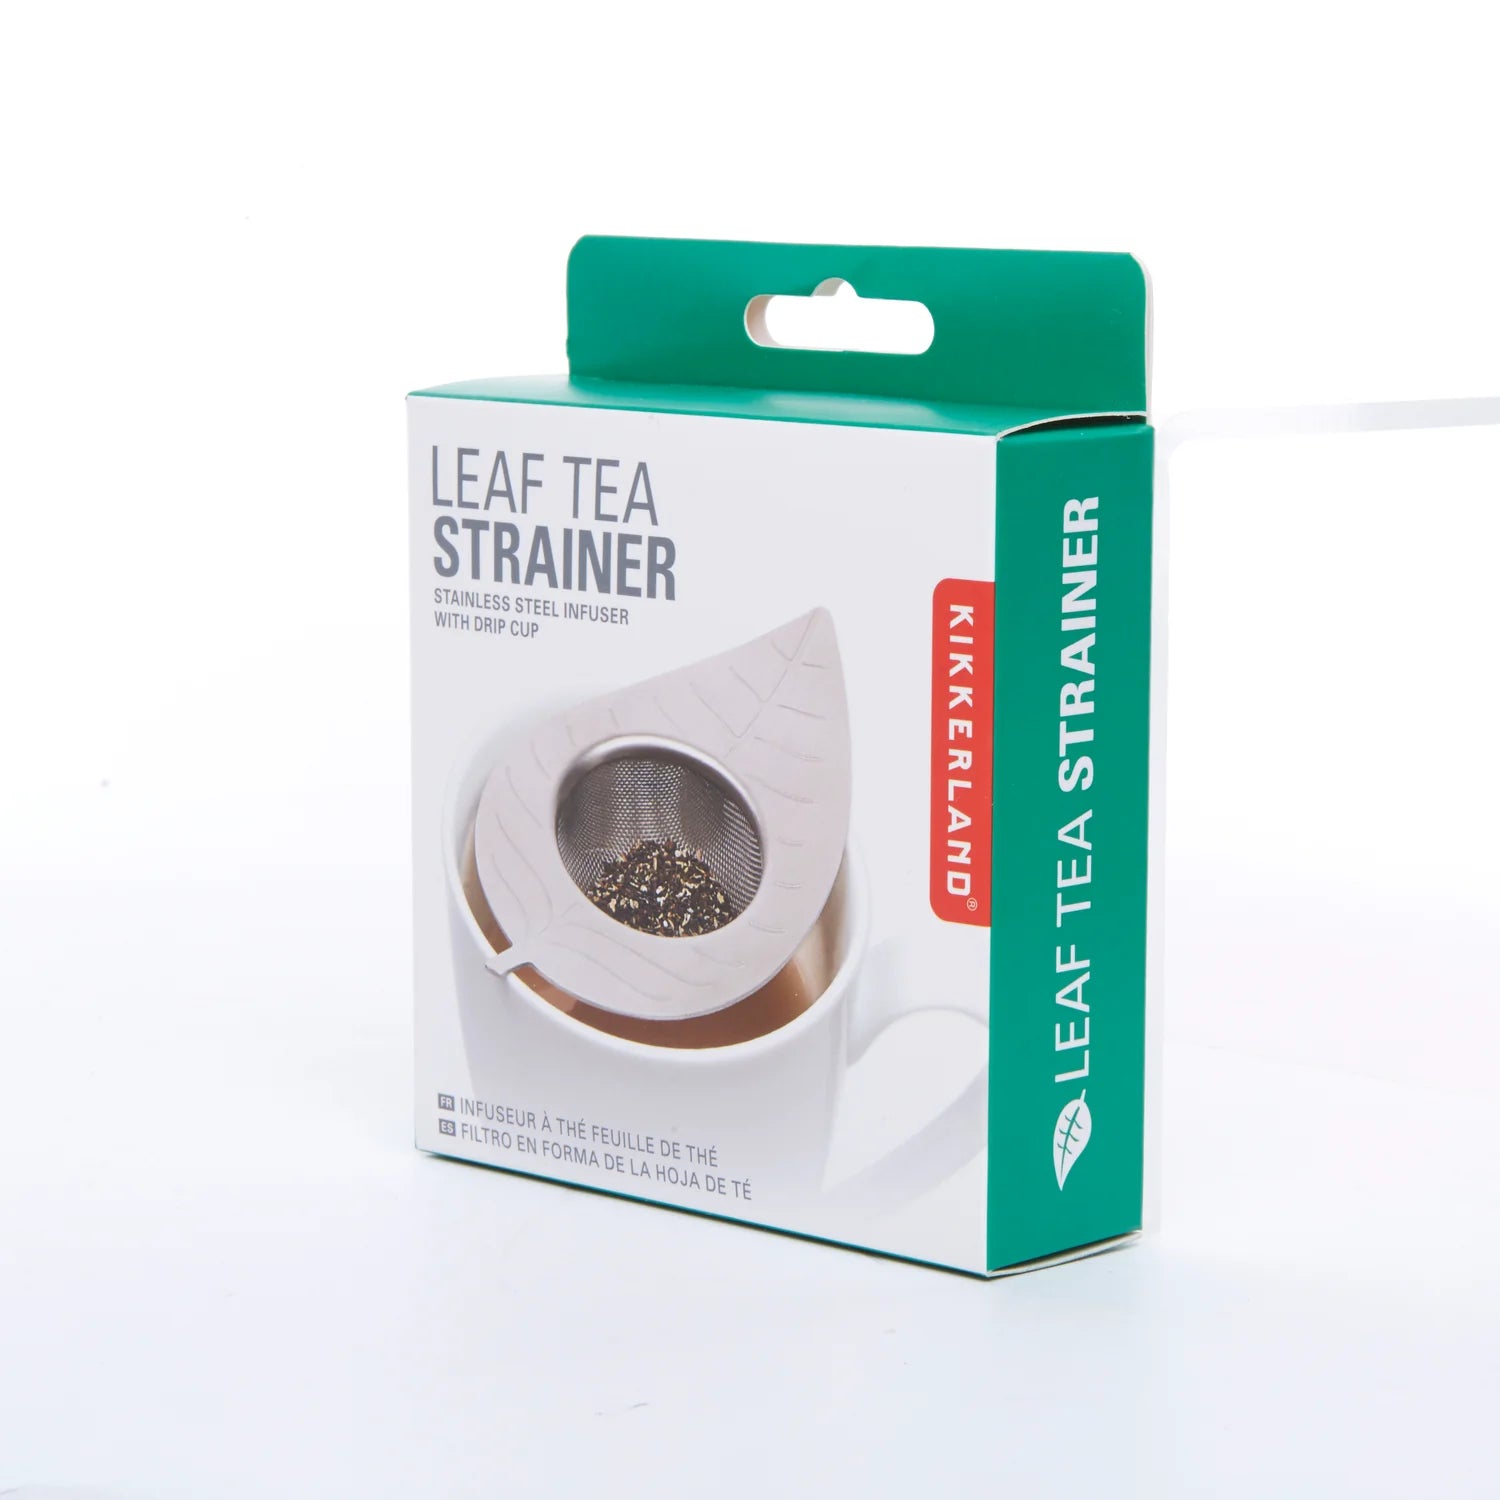 Tea Strainer- Leaf